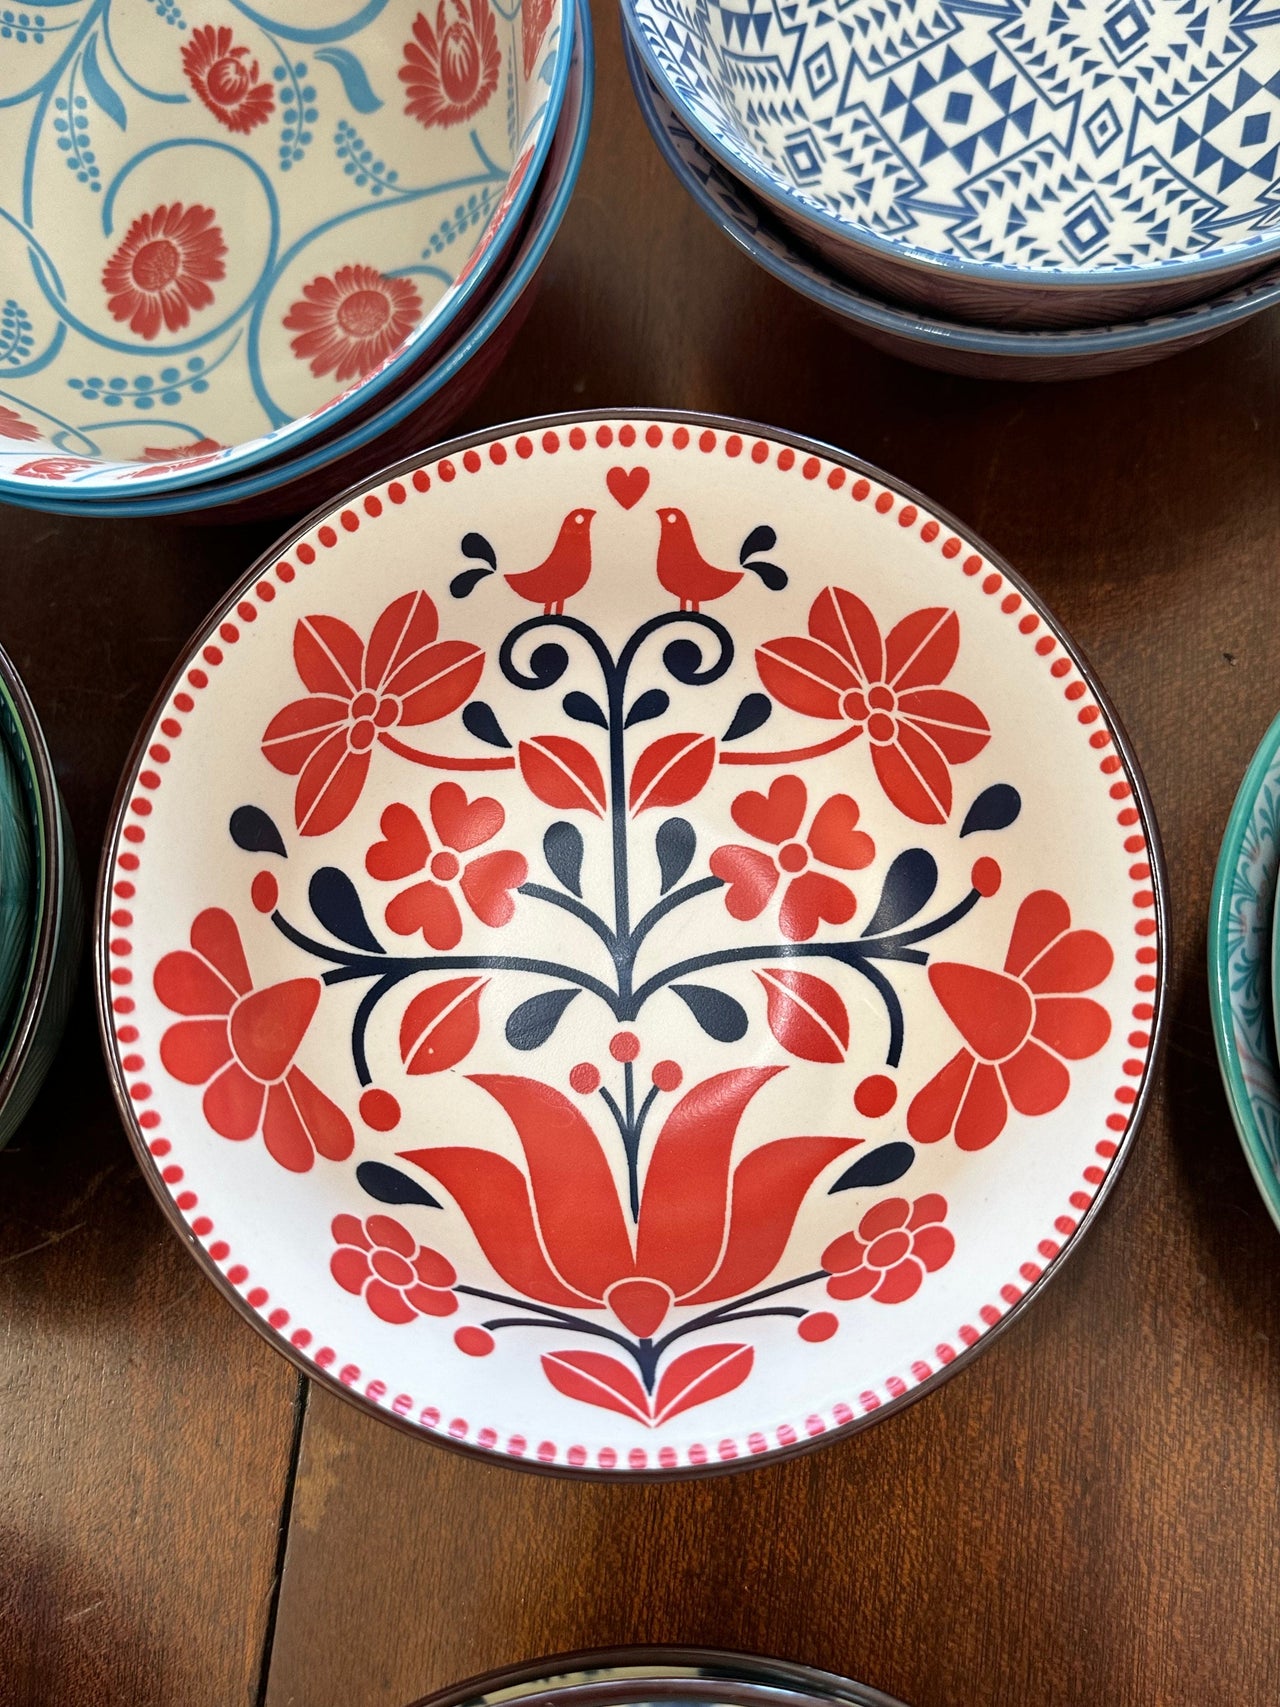 Porcelain Bowls of Art 6” Mattie B's Gifts & Apparel Birds in Tree